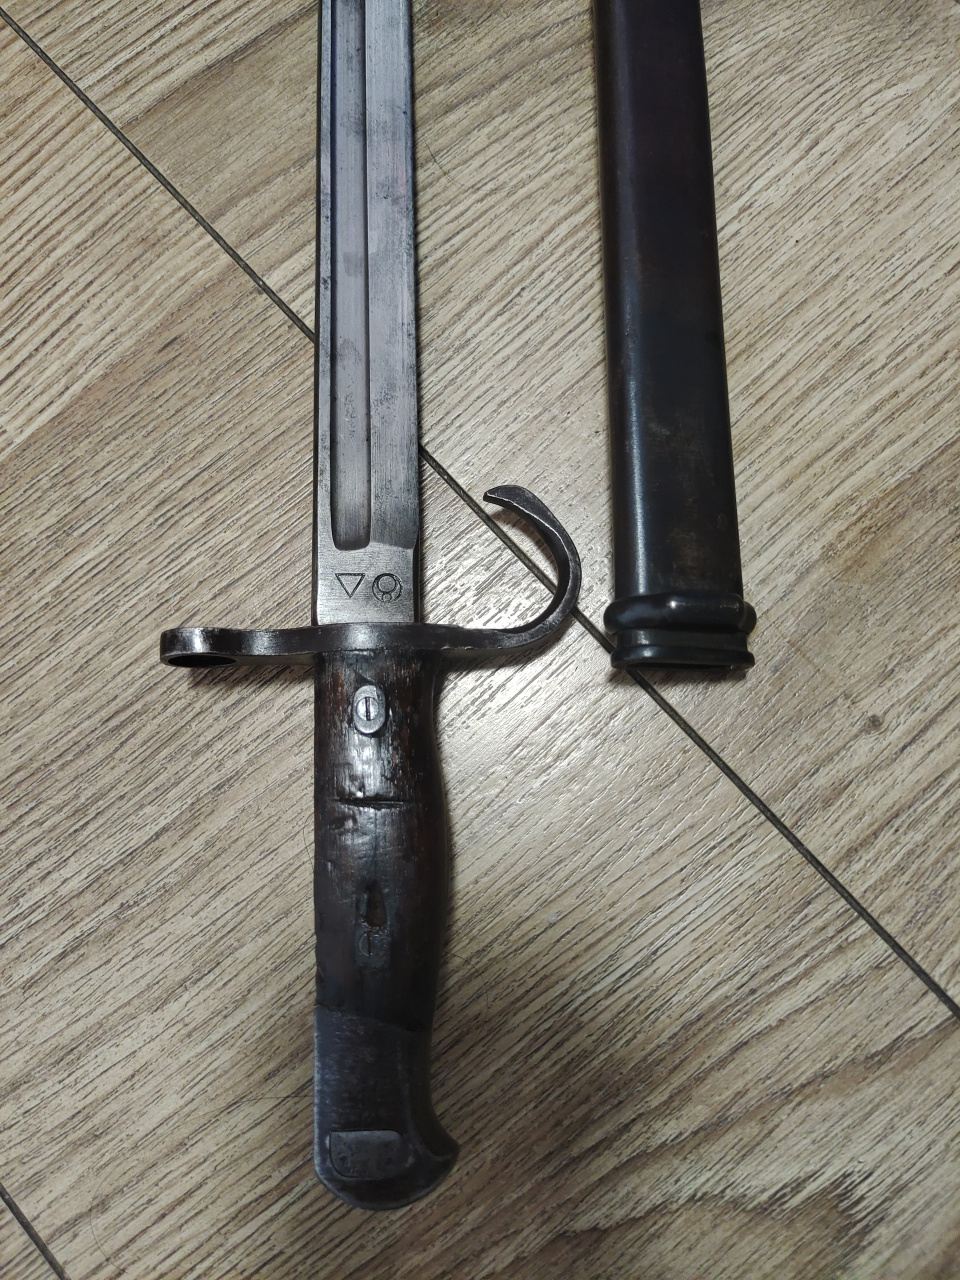 日本明治30年式刺刀,俗称30刺,双标,名古屋兵工厂监制爱知工业生产